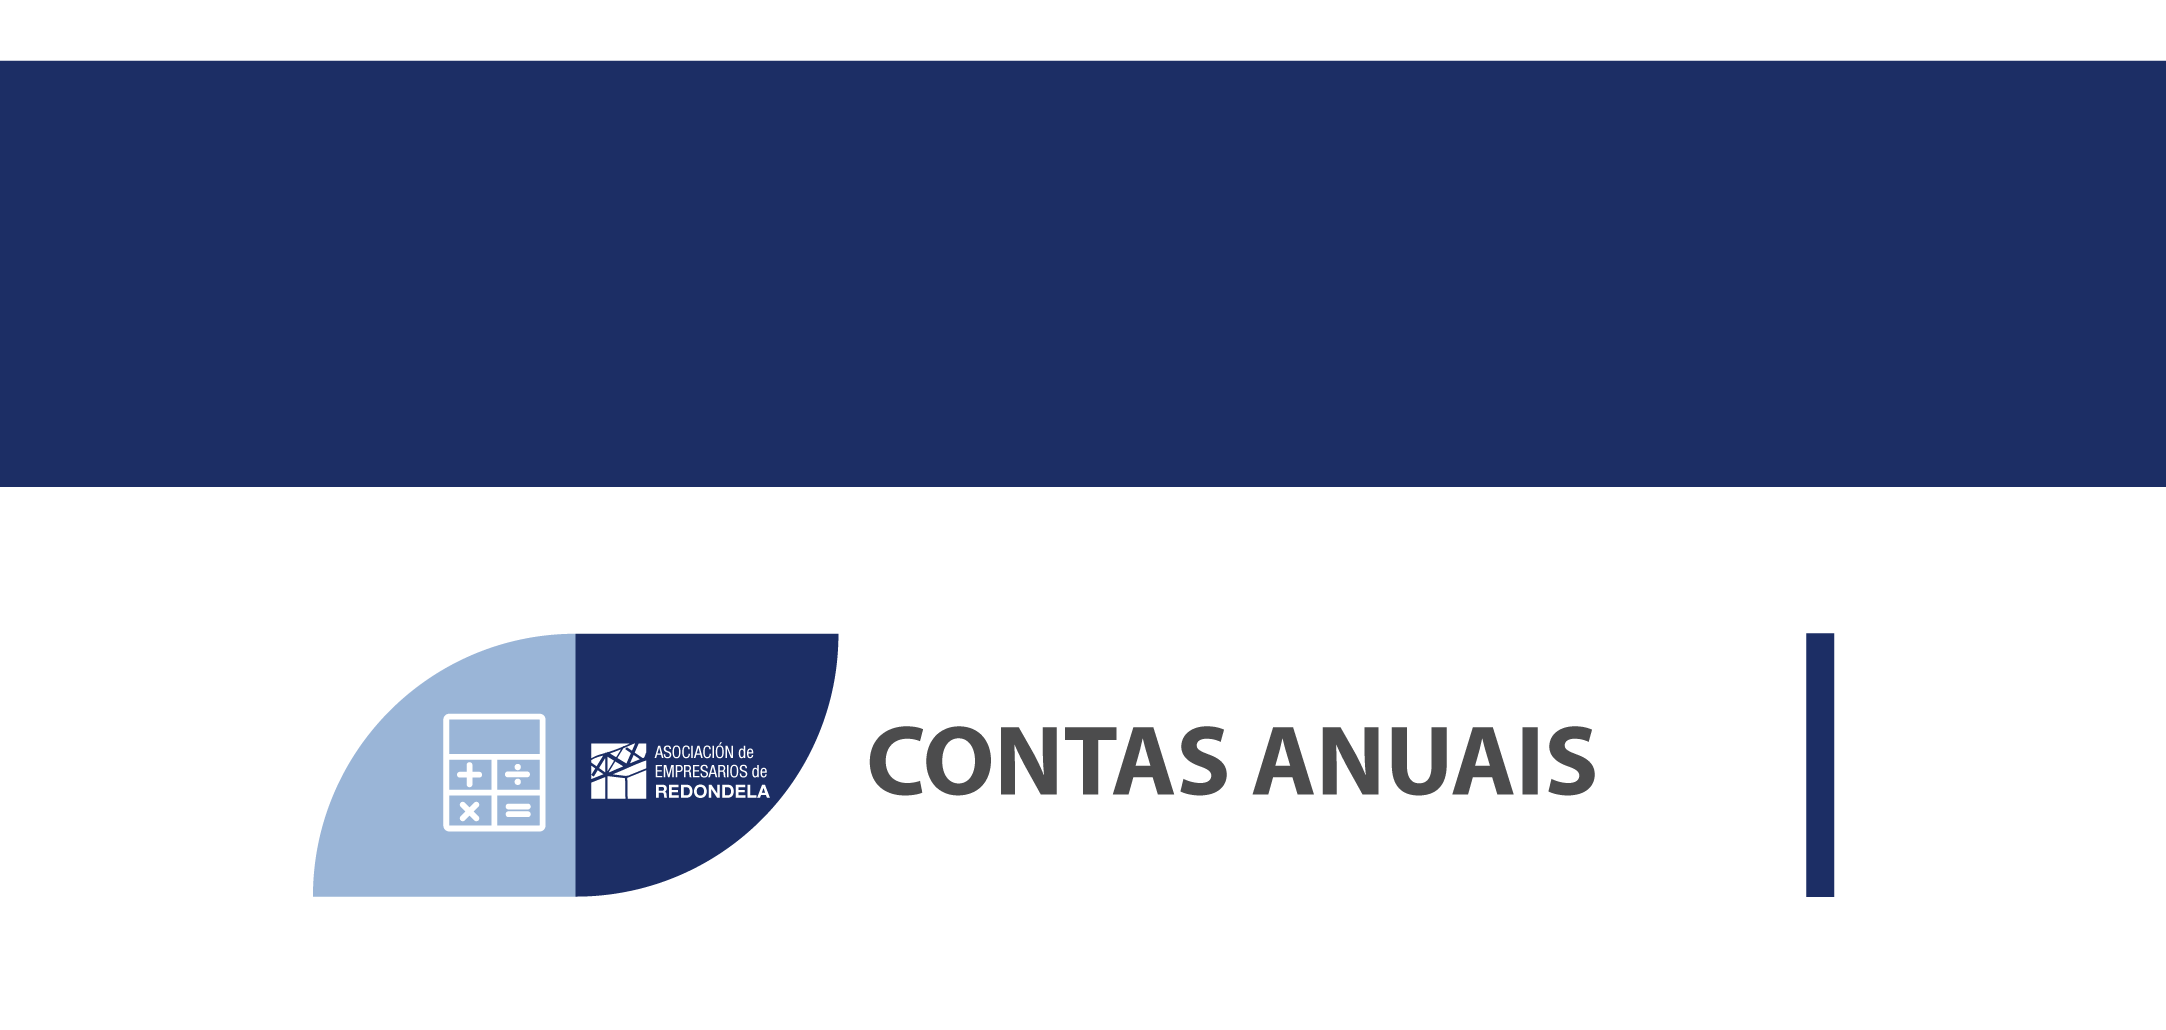 BANNER-CONTAS-ANUAIS.png